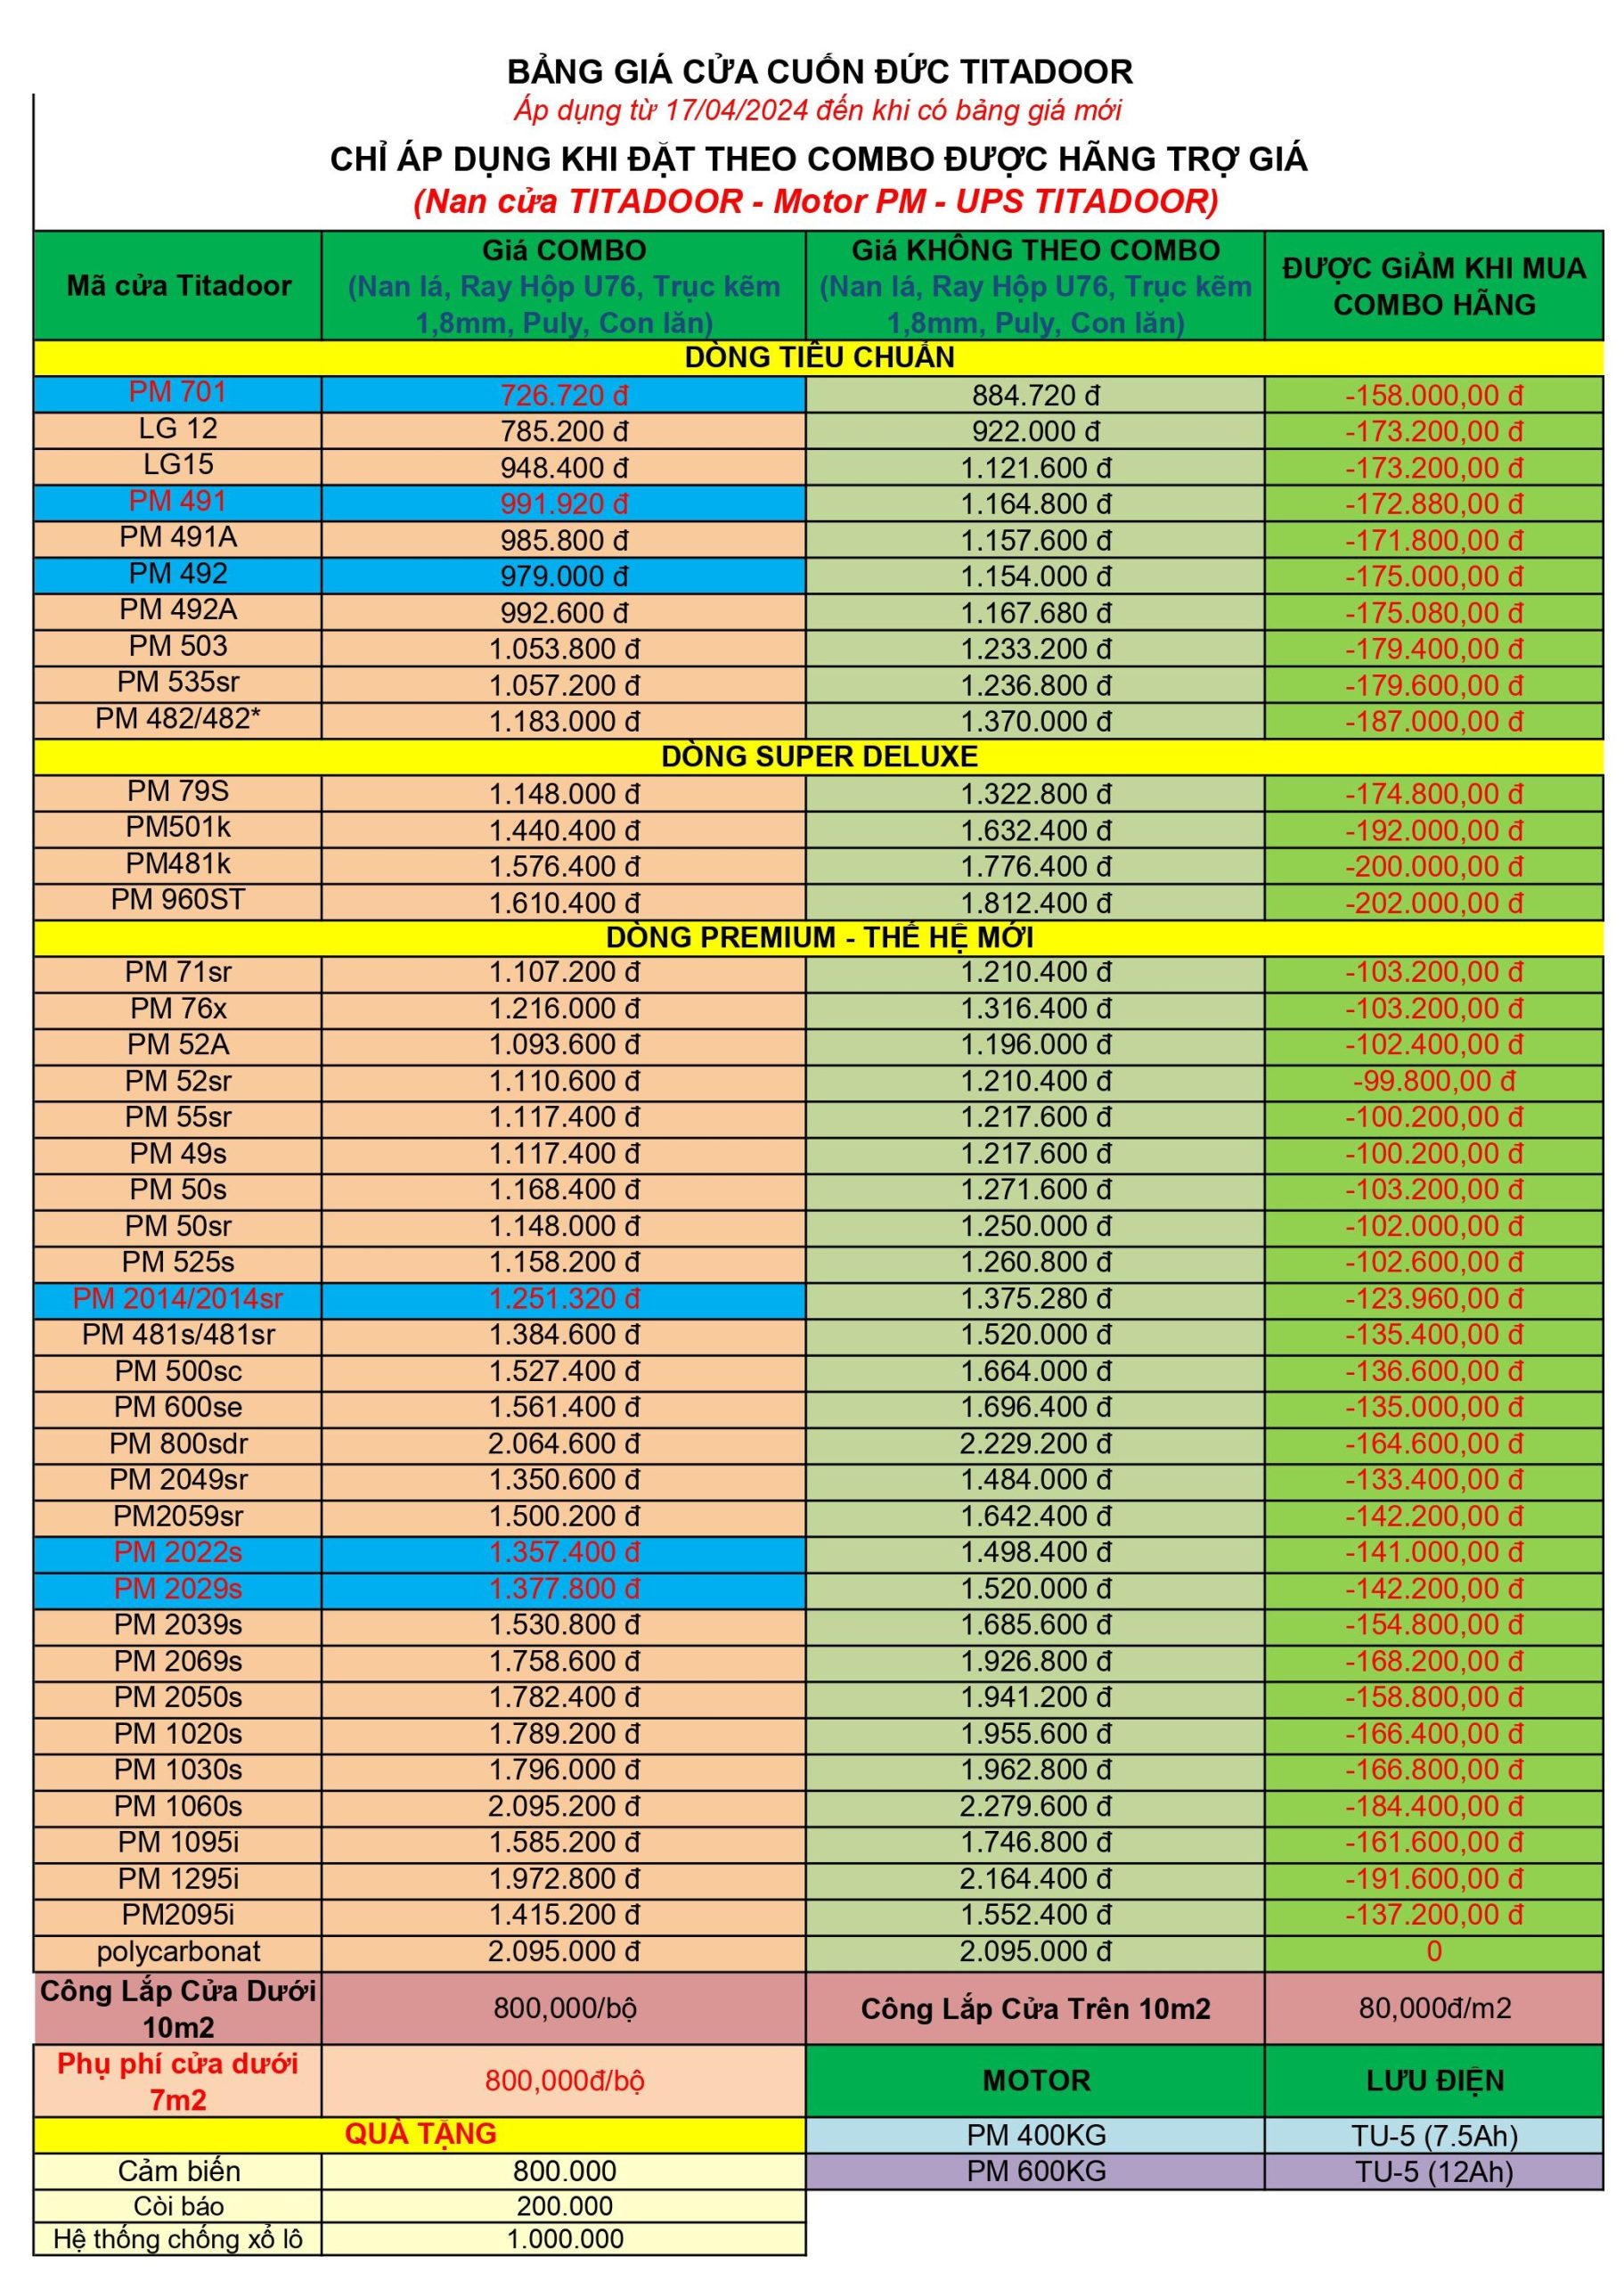 bảng giá cửa cuốn titadoor mới - 17-04-2024 (combo)